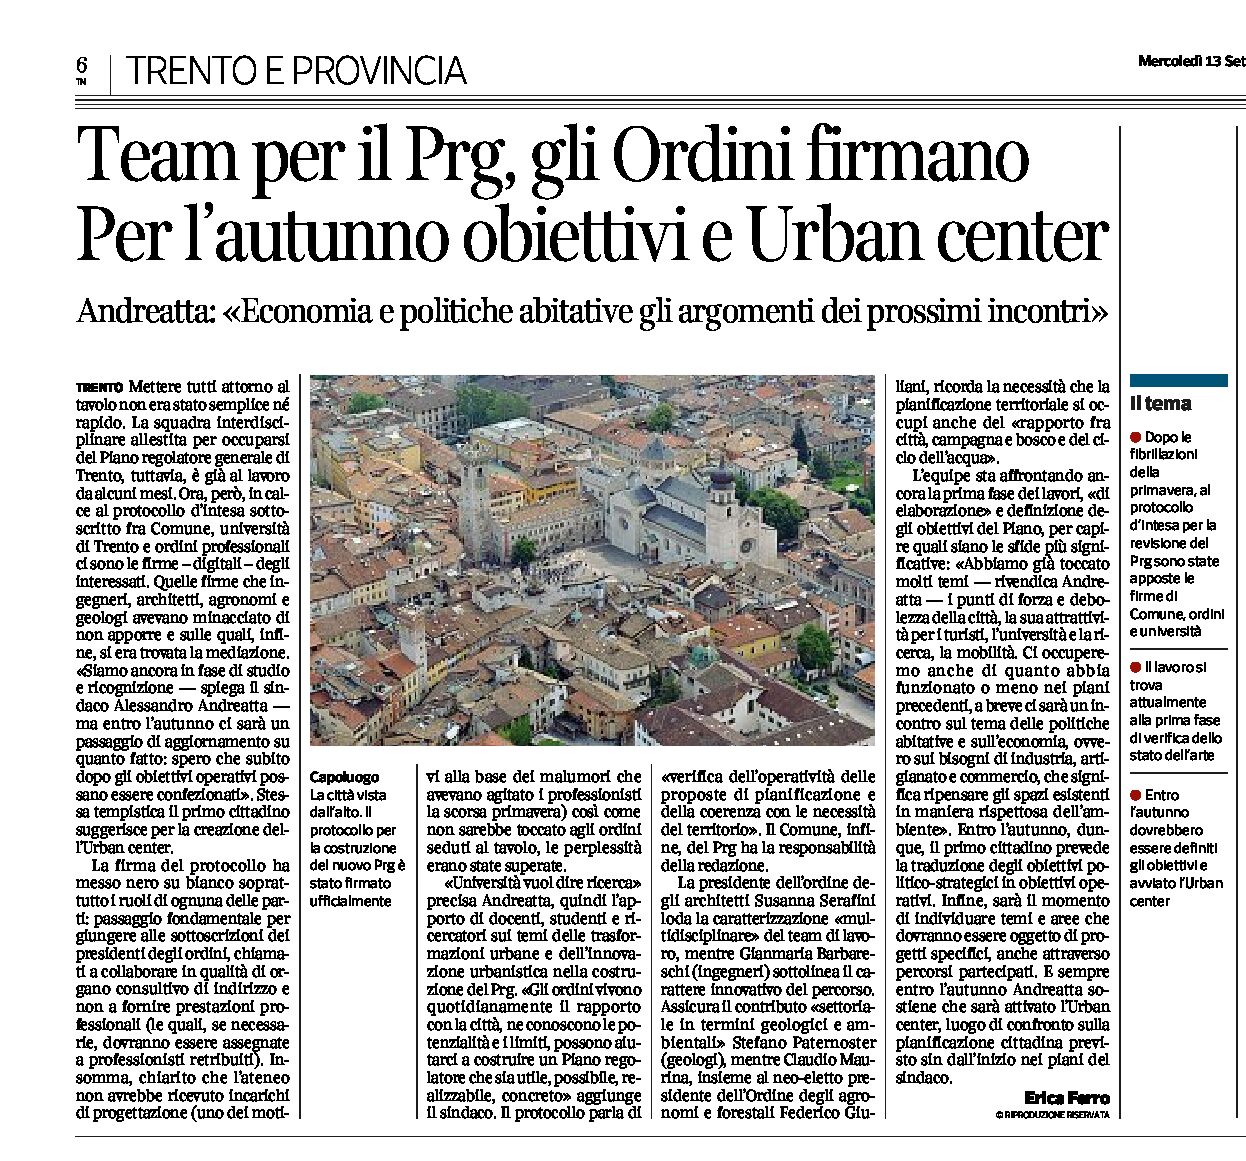 Trento: team per il Prg, gli Ordini firmano. Per l’autunno obiettivi e Urban center